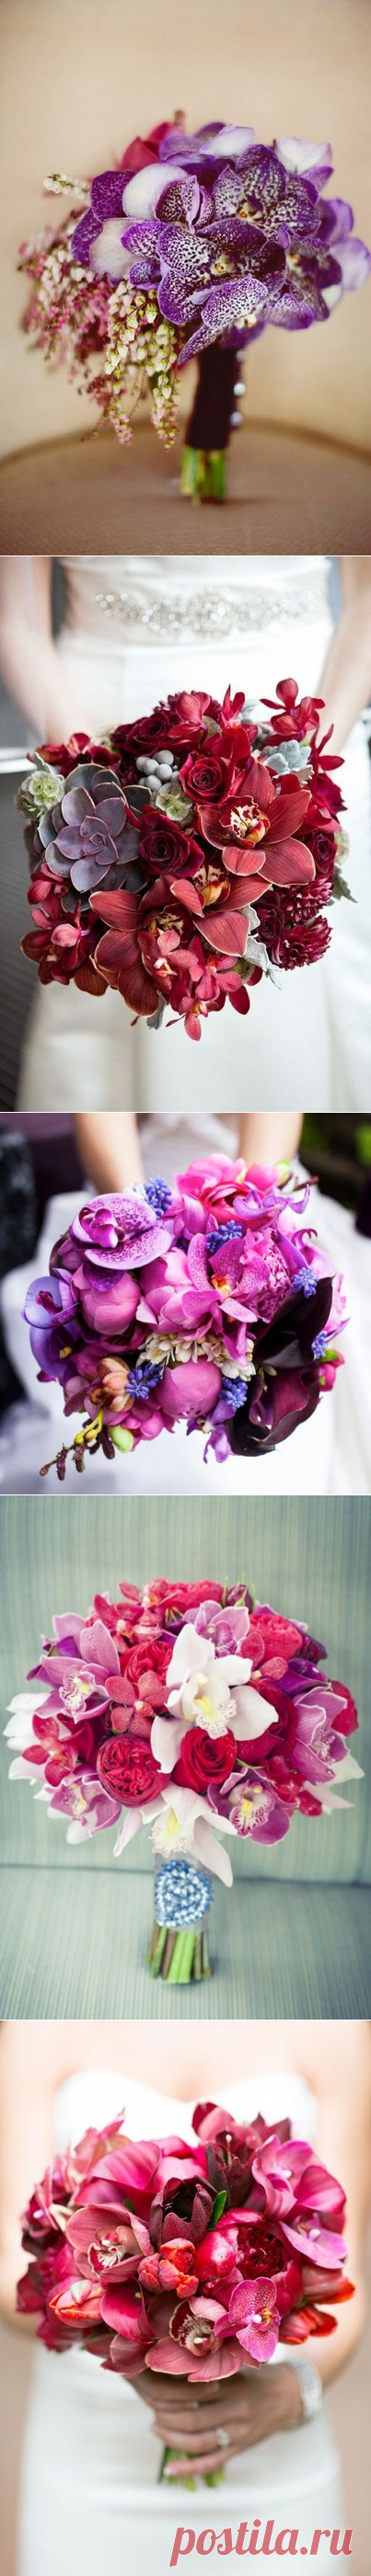 Чарующие орхидеи

#Свадебные_букеты_Prowedding 
Pro Wedding